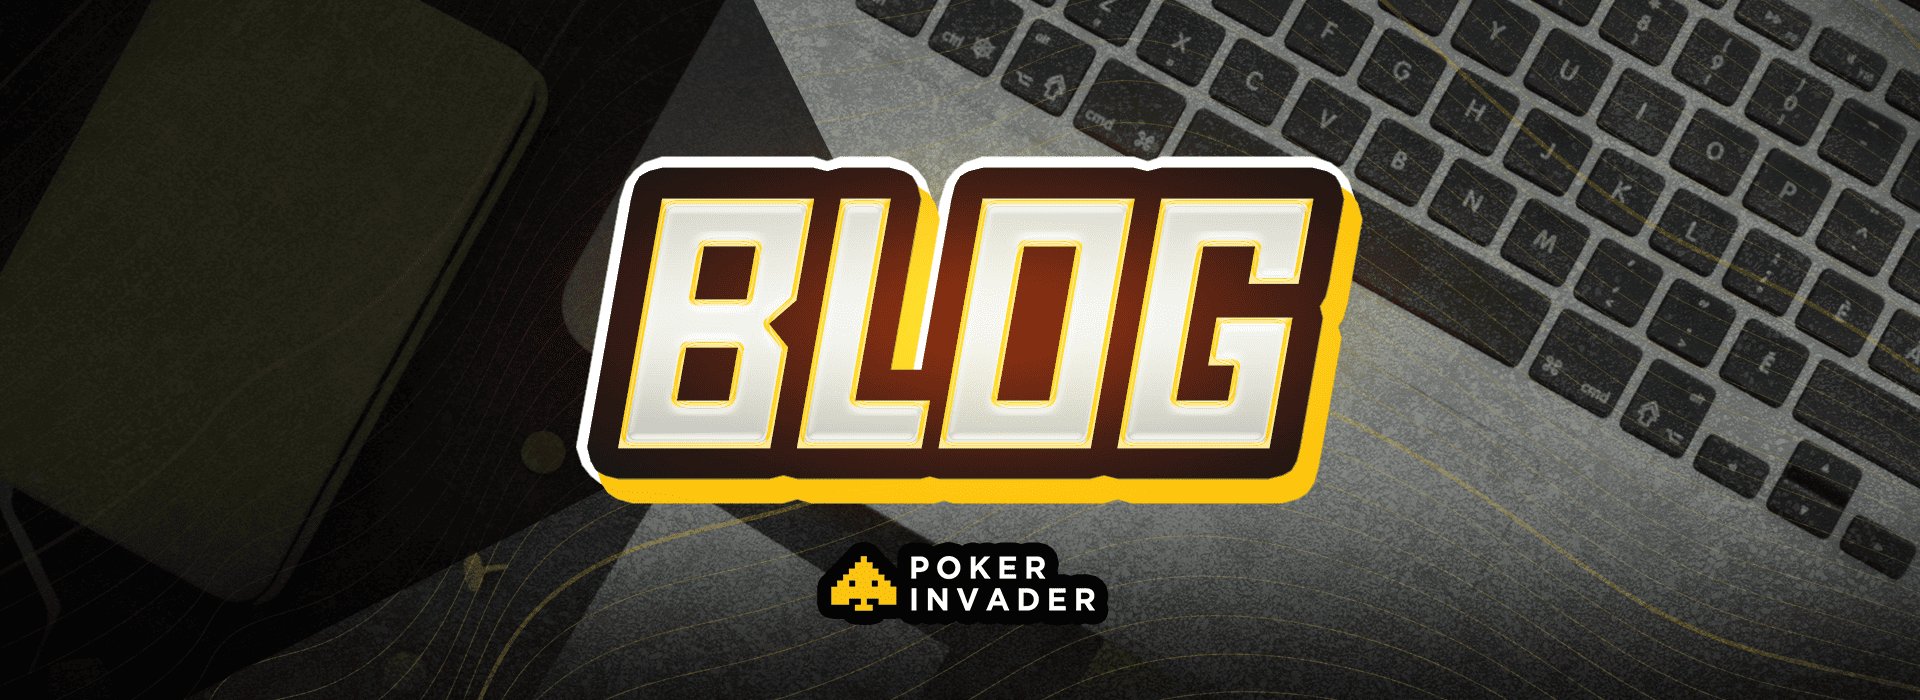 blog poker